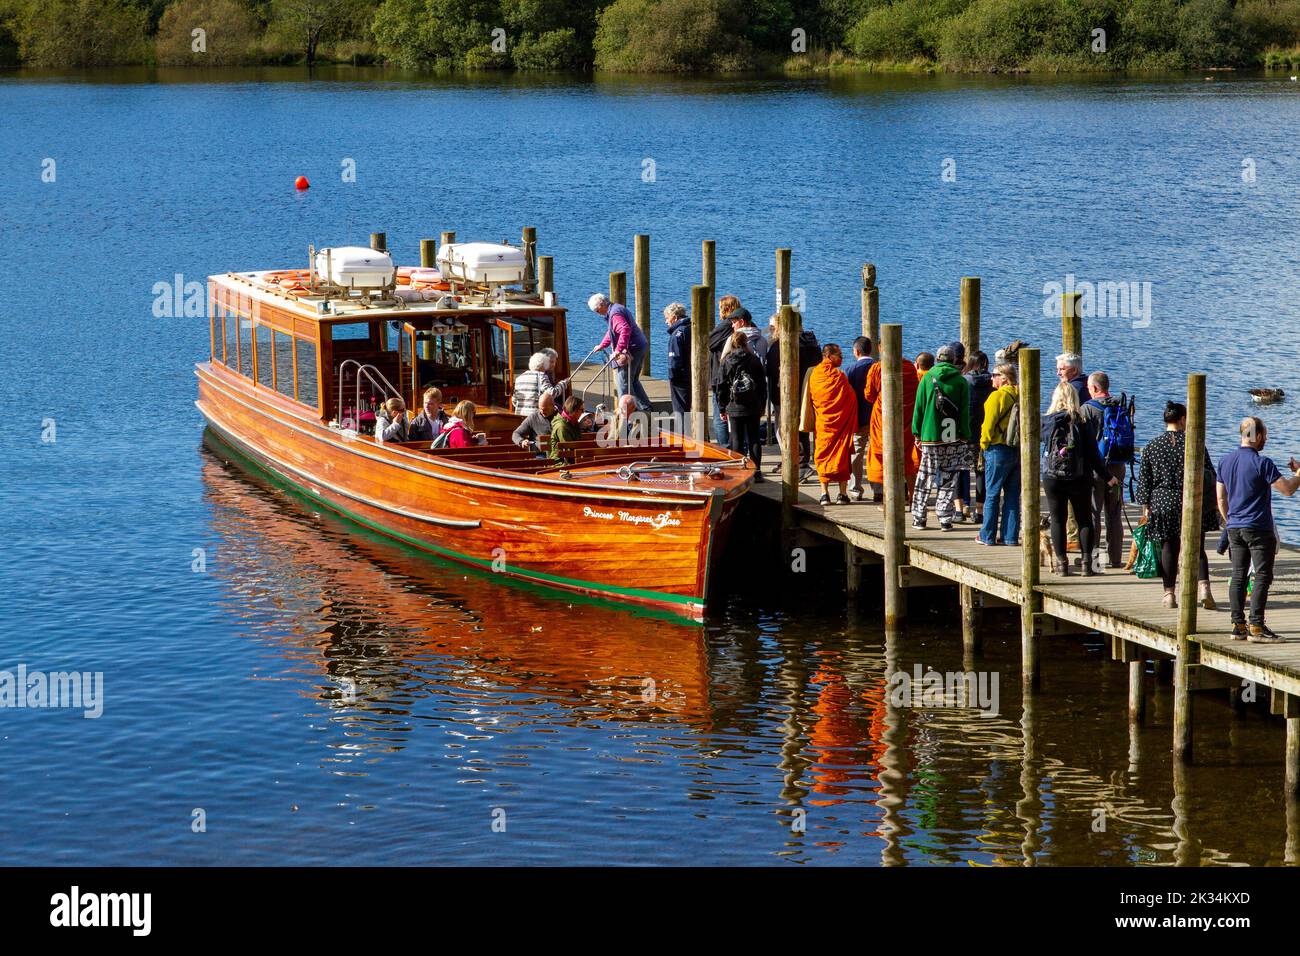 Lagos ingleses, paisajes del Lake District, barcos turísticos, muelles y amarraderos en Cumbria, Reino Unido Foto de stock